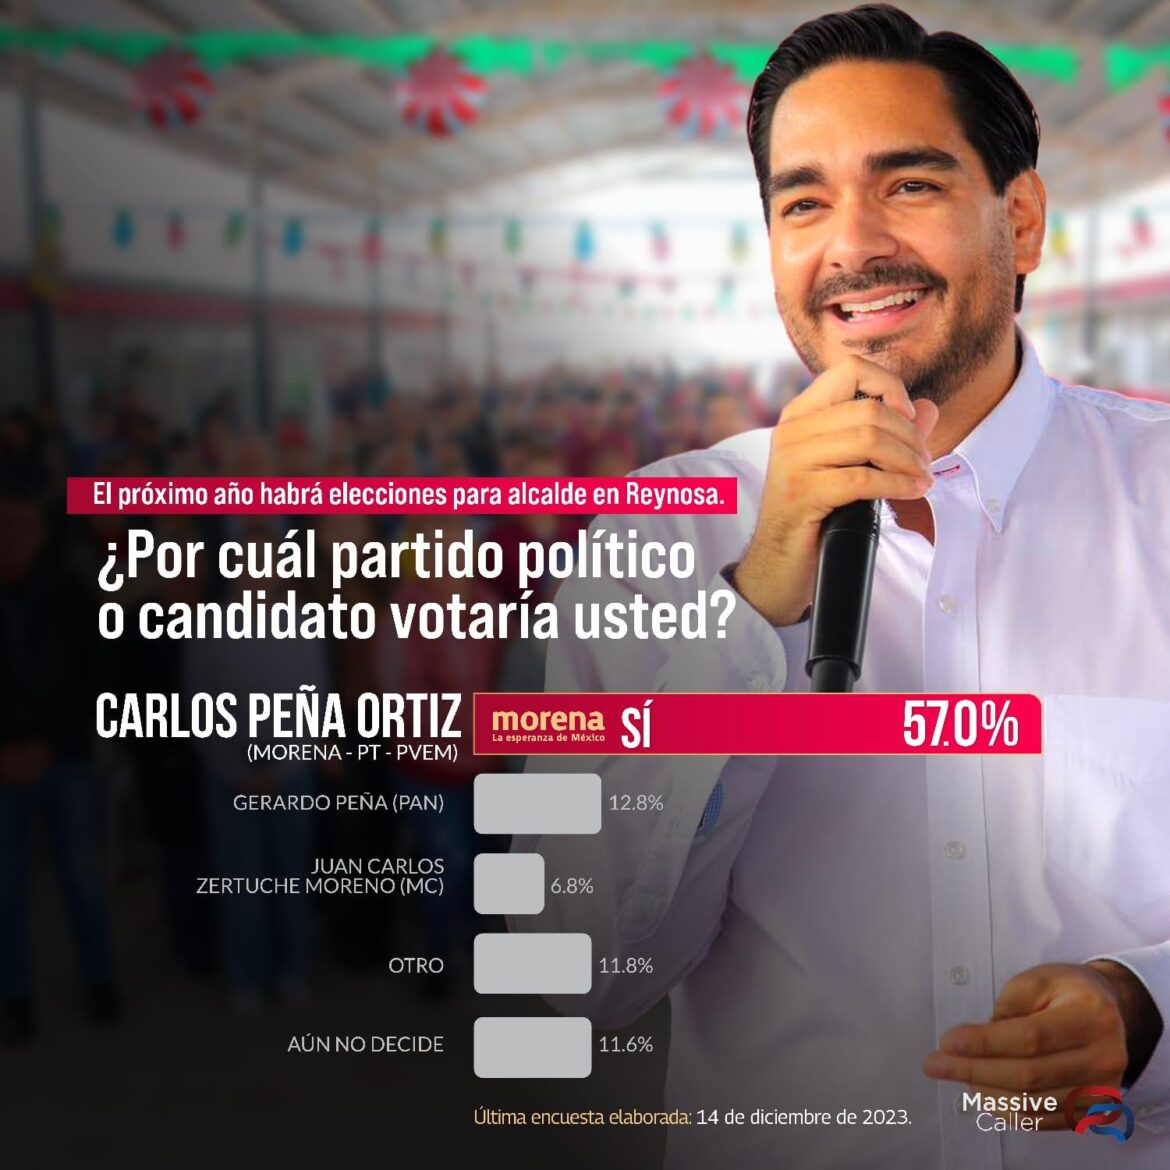 Record en intención de voto para reelegir a Carlos Peña Ortiz a la Presidencia de Reynosa